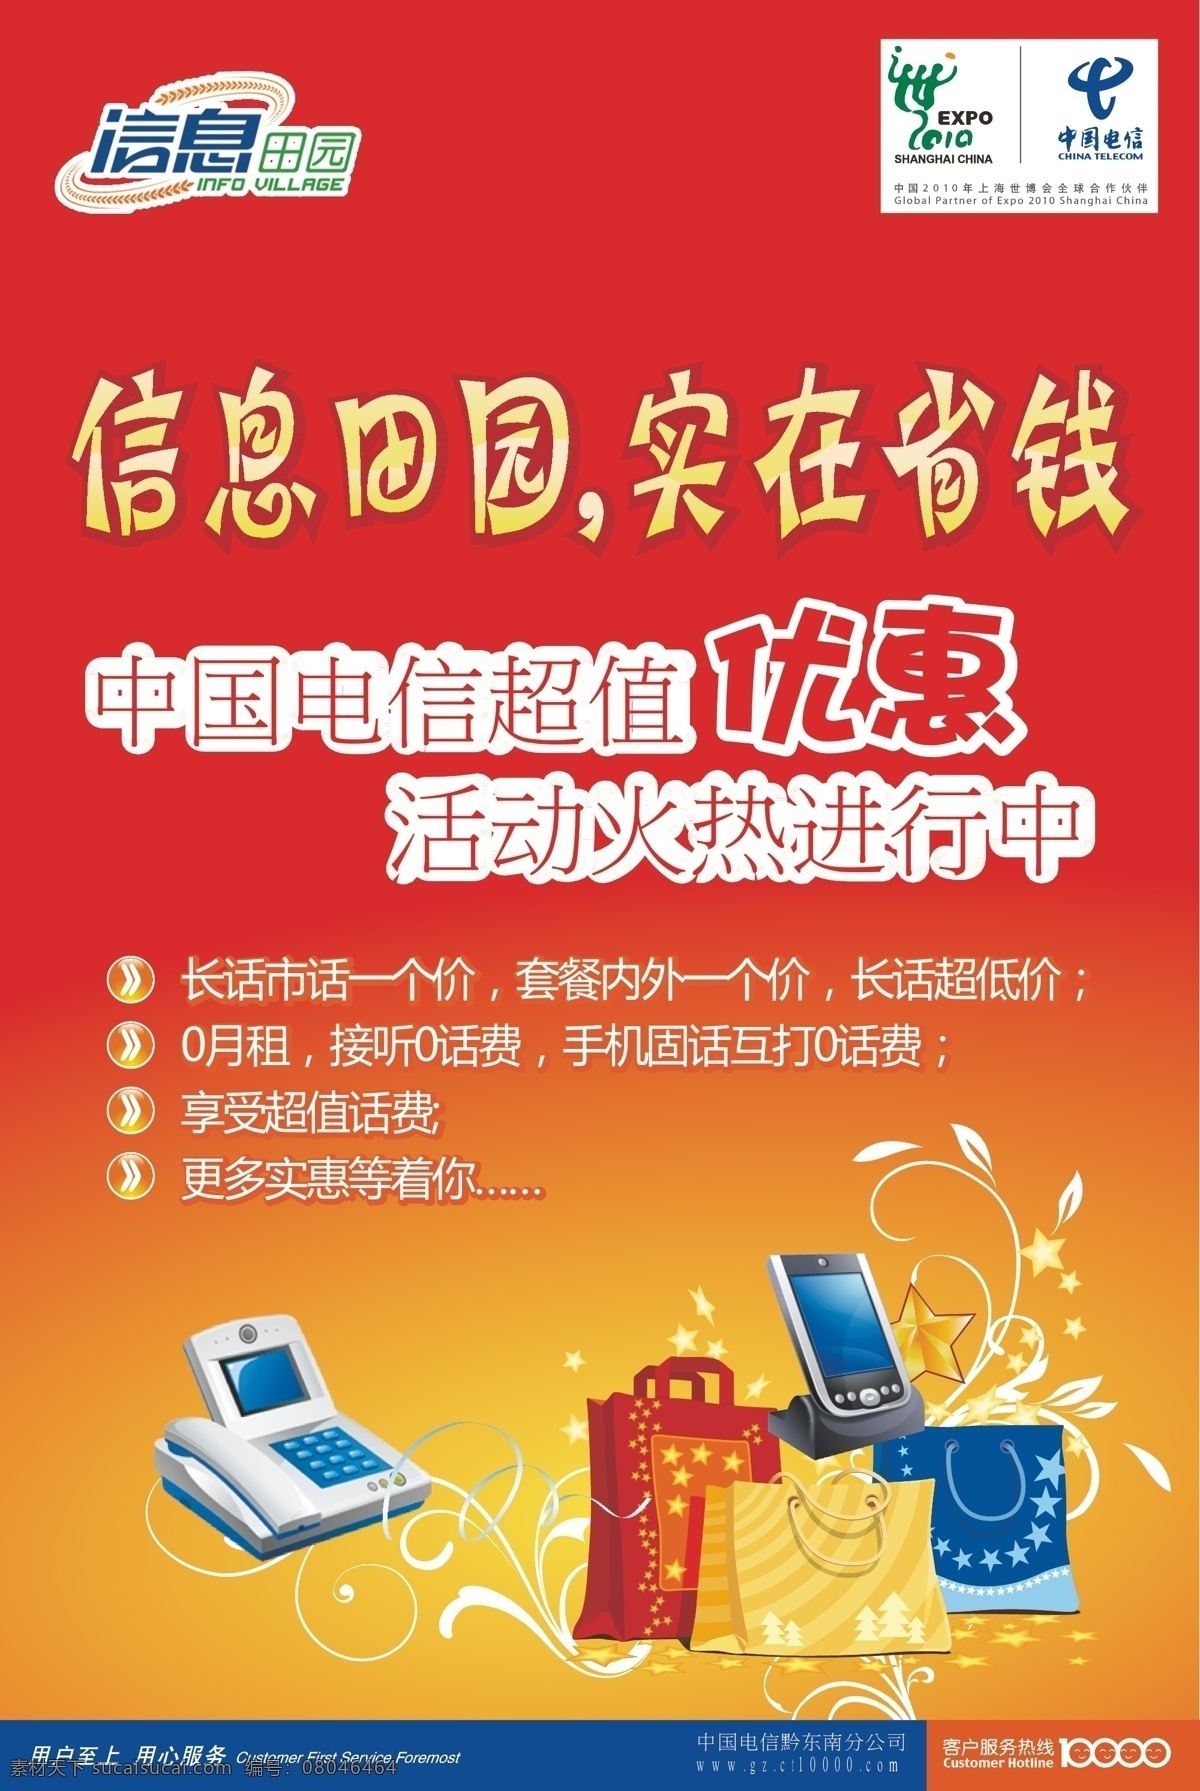 超值 大礼包 电话 电信 上海世博会 手机 手提袋 信息田园 实在省钱 天翼 送话费 优惠活动 矢量 其他海报设计